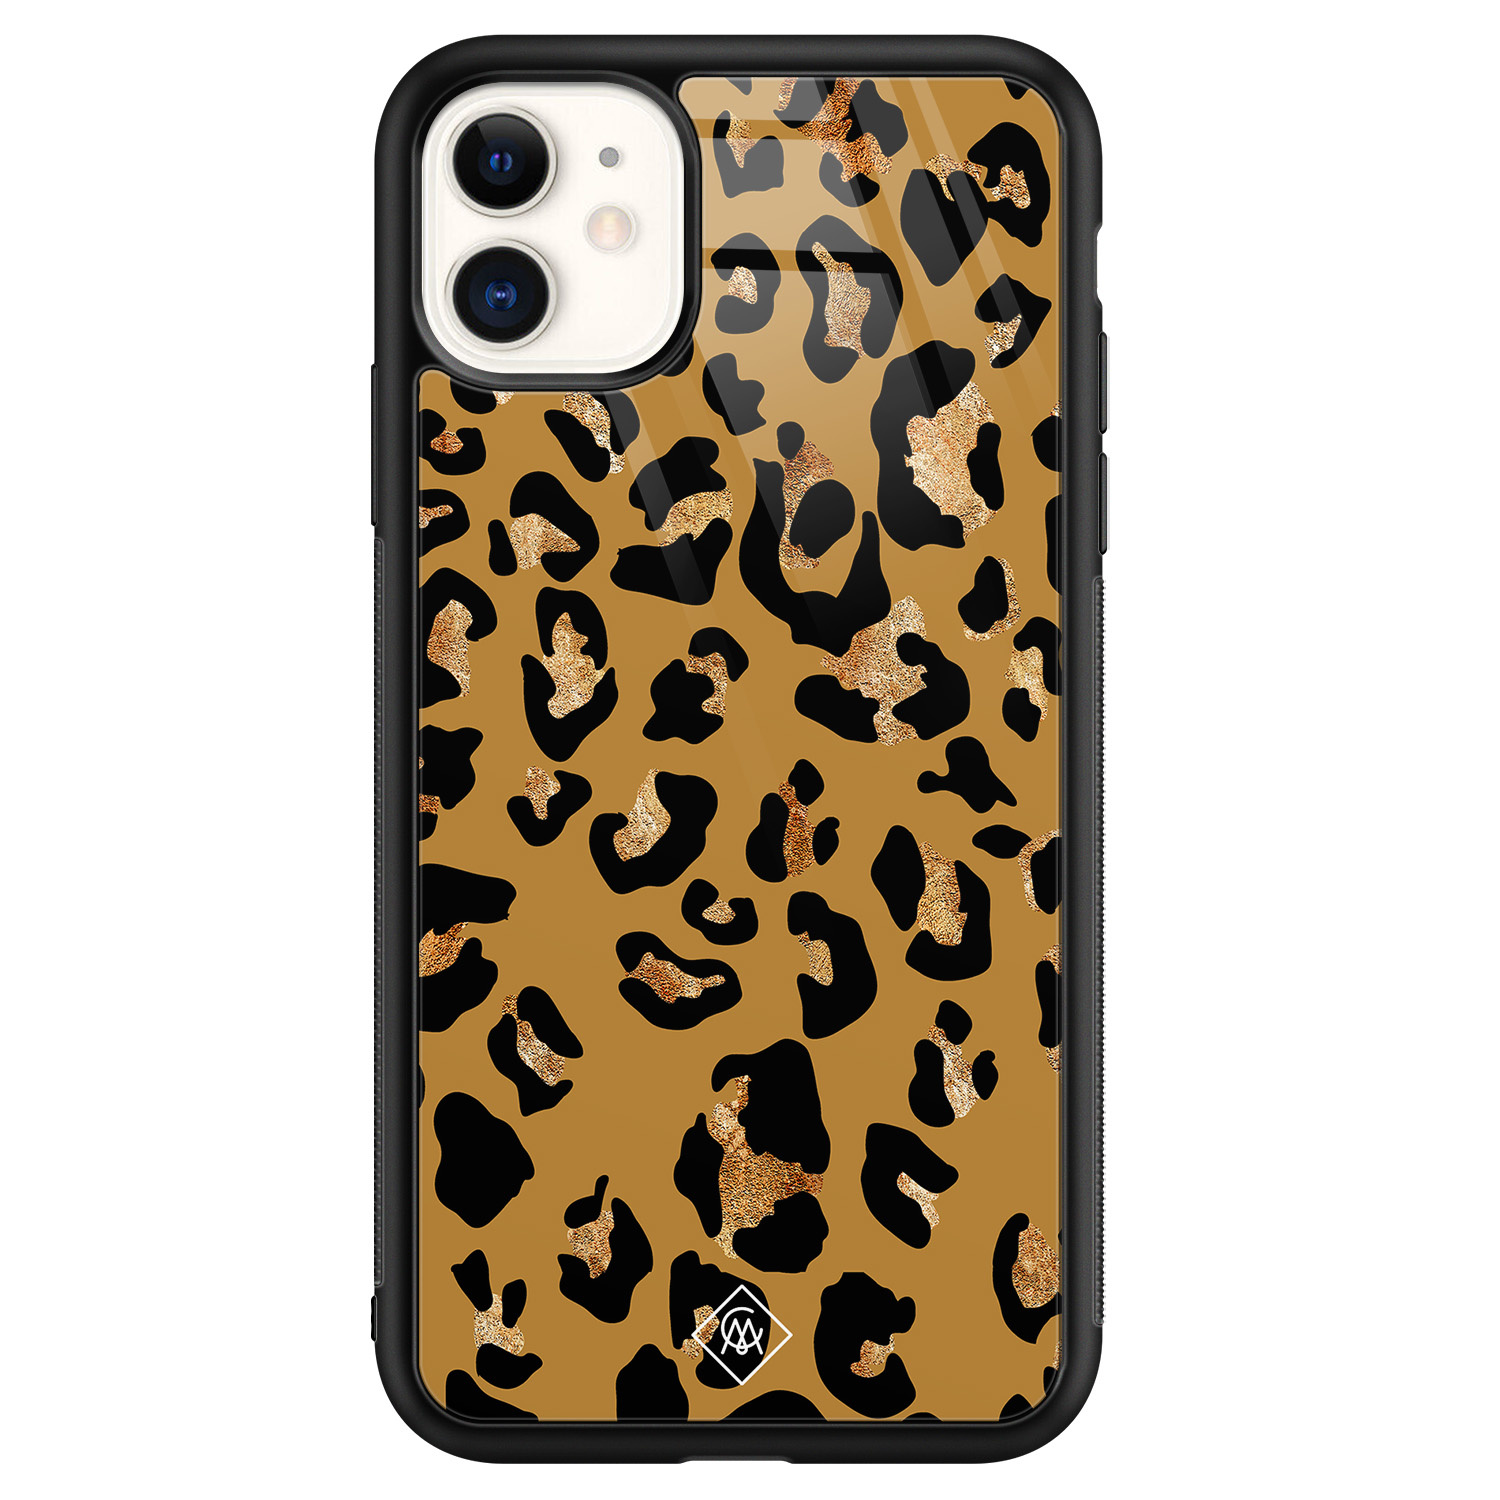 iPhone 11 glazen hardcase - Jungle wildcat